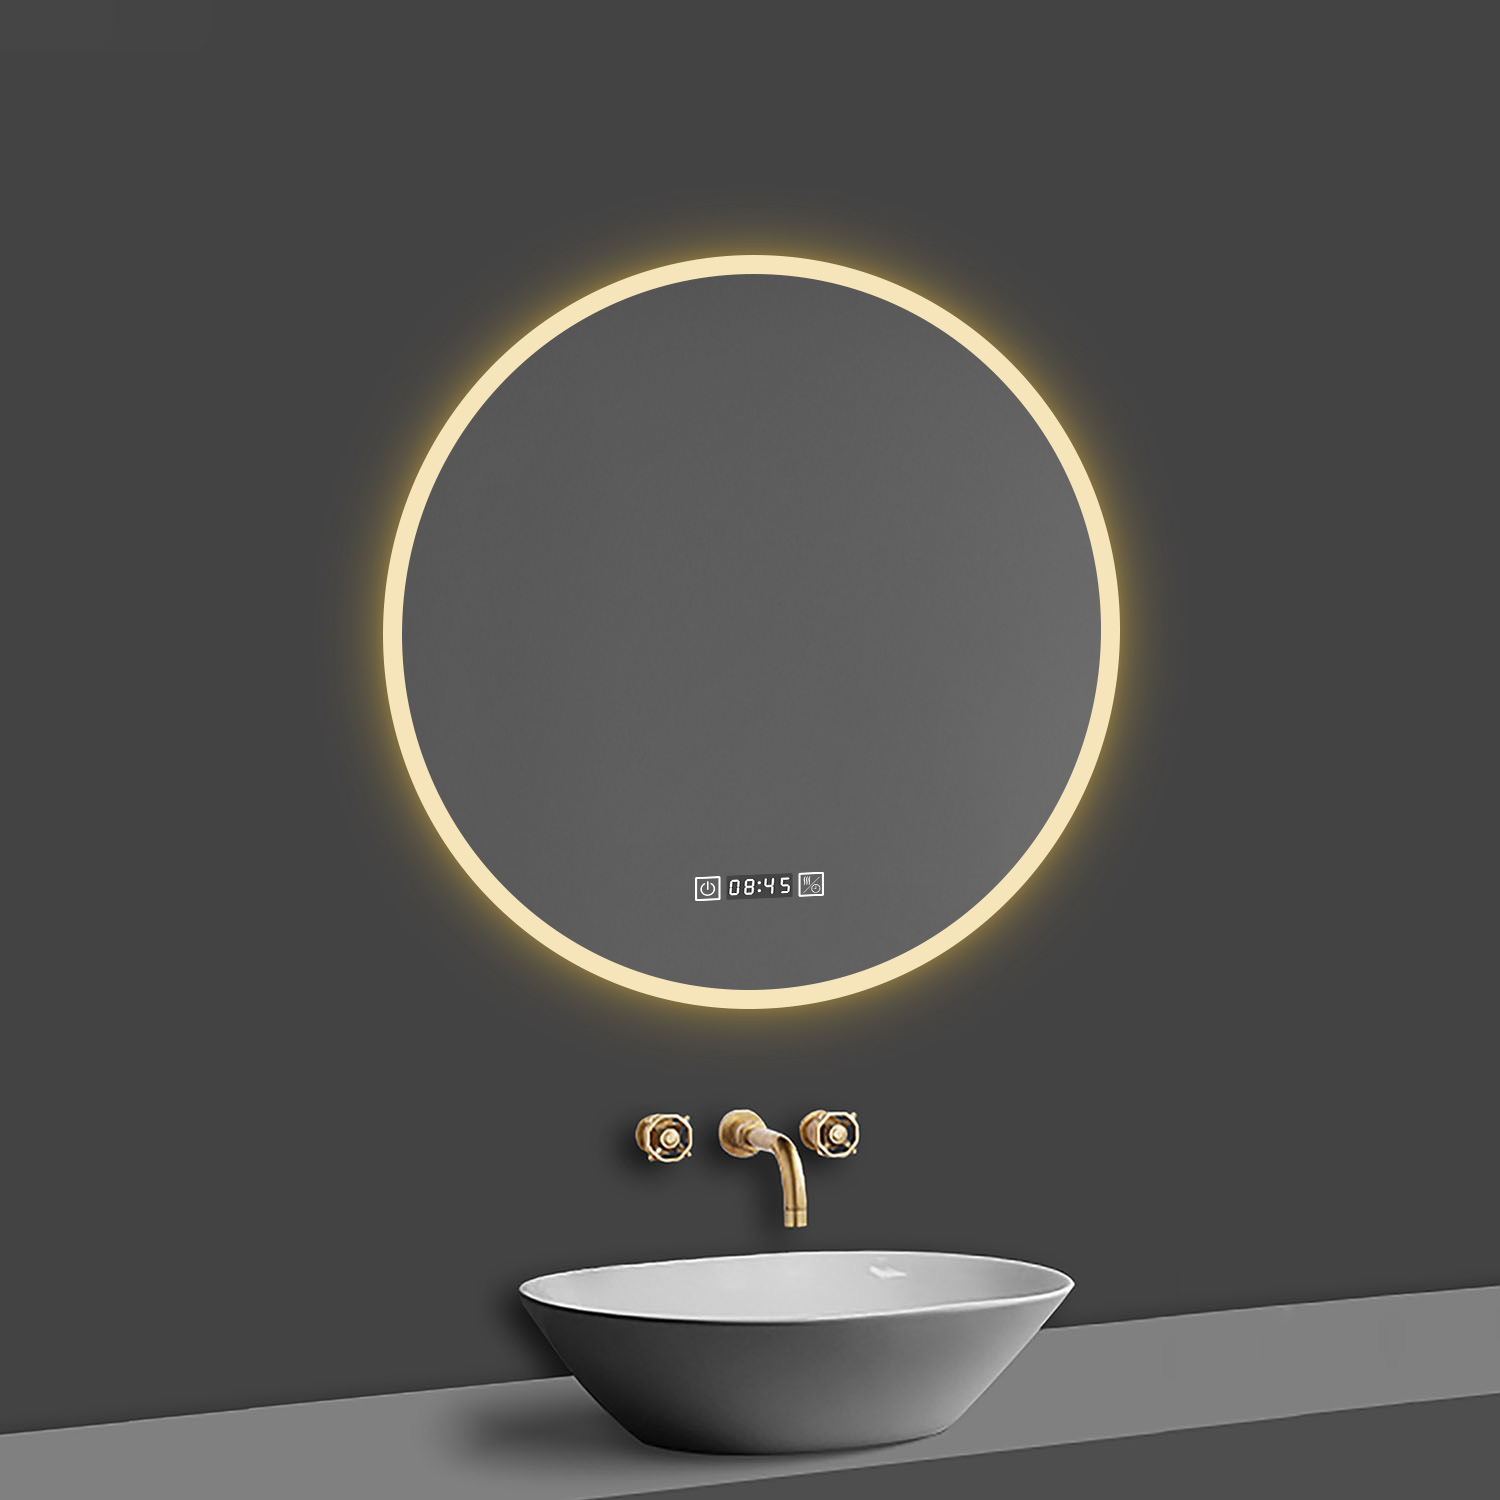 LED Spiegel Rund 70 cm Kalt/Warmweiß dimmbar Uhr TOUCH BESCHLAGFREI Wandspiegel